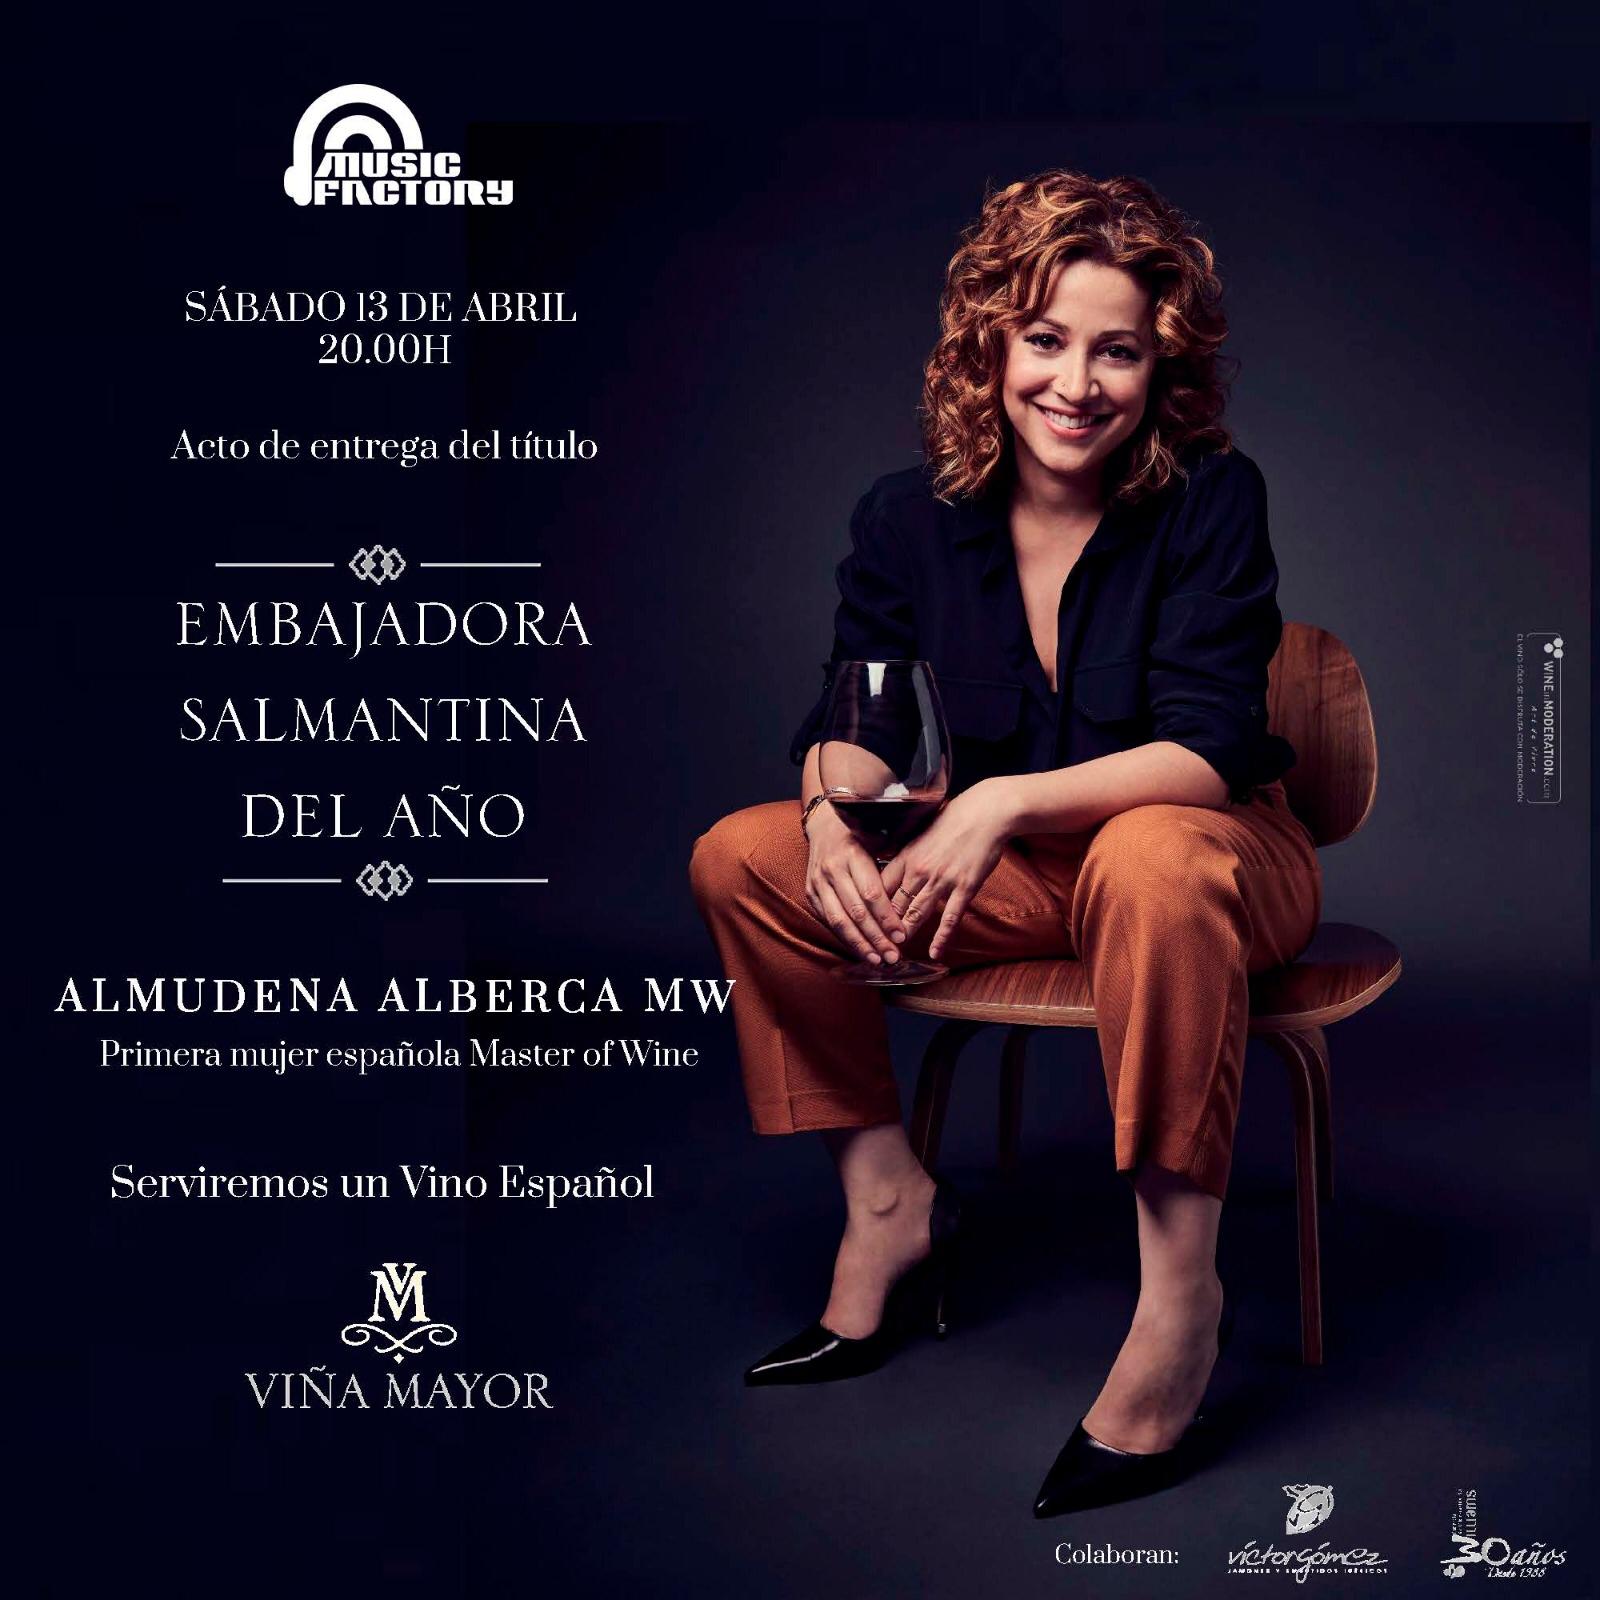 Foto 1 - Music Factory con su premio anual ‘Embajadora Salmantina del año’ reconoce a Almudena...